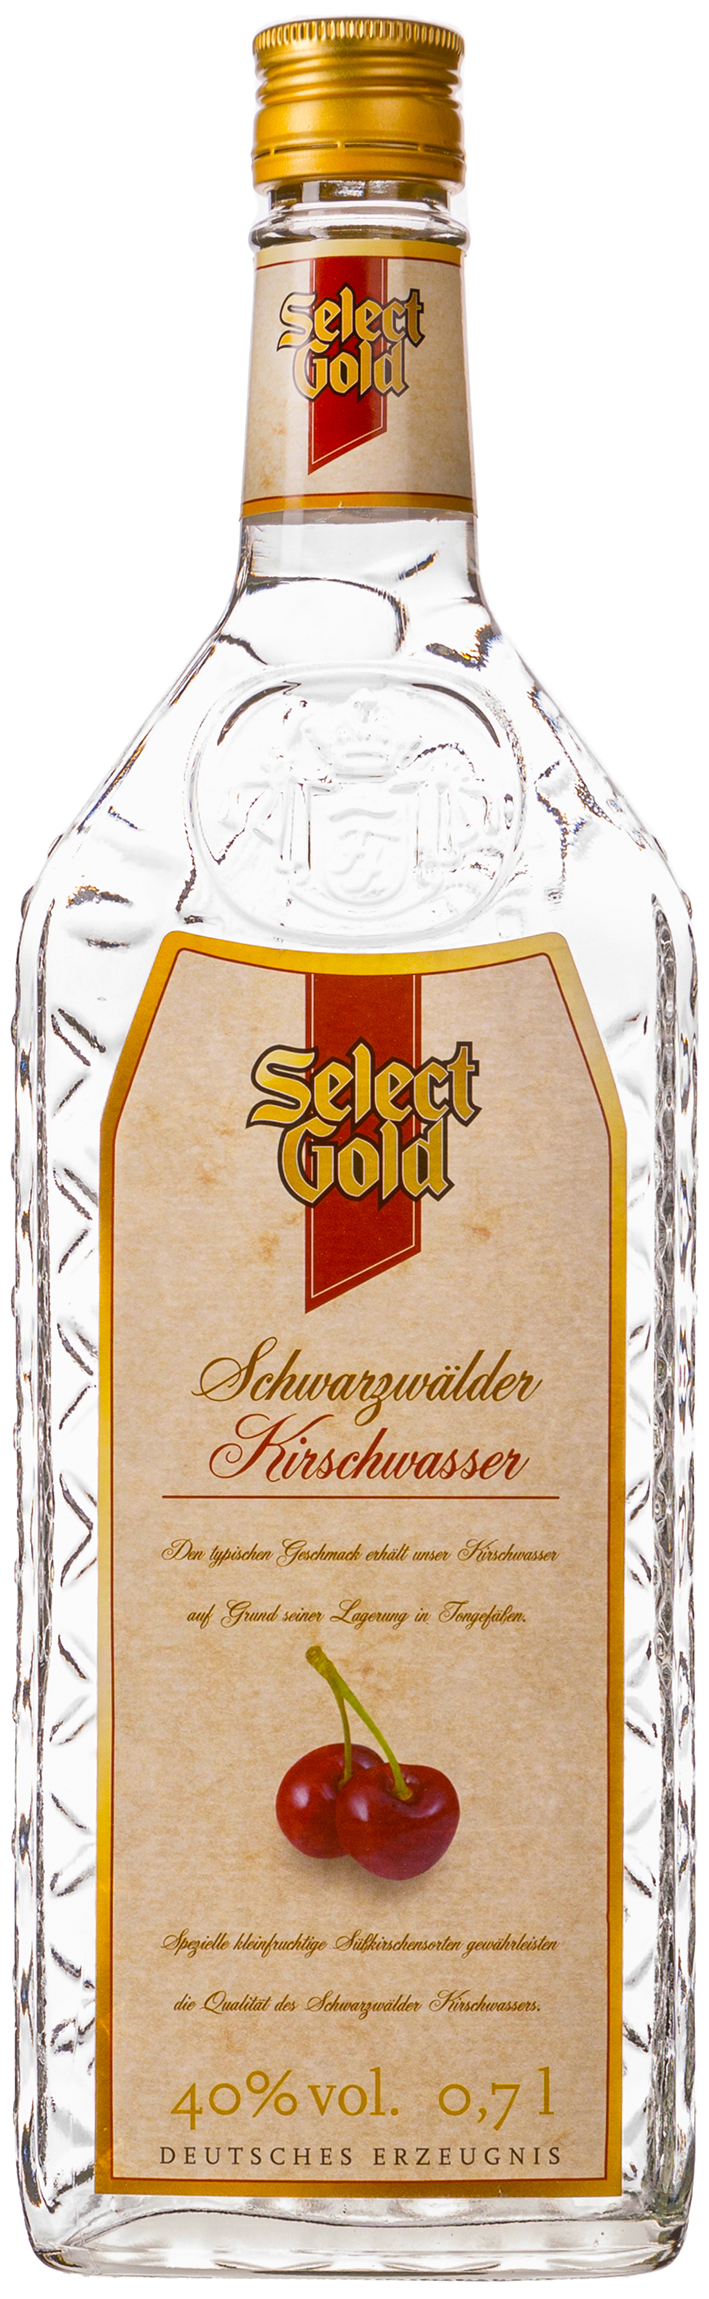 Select 0,7L 40% Schwarzwälder Kirschwasser Gold